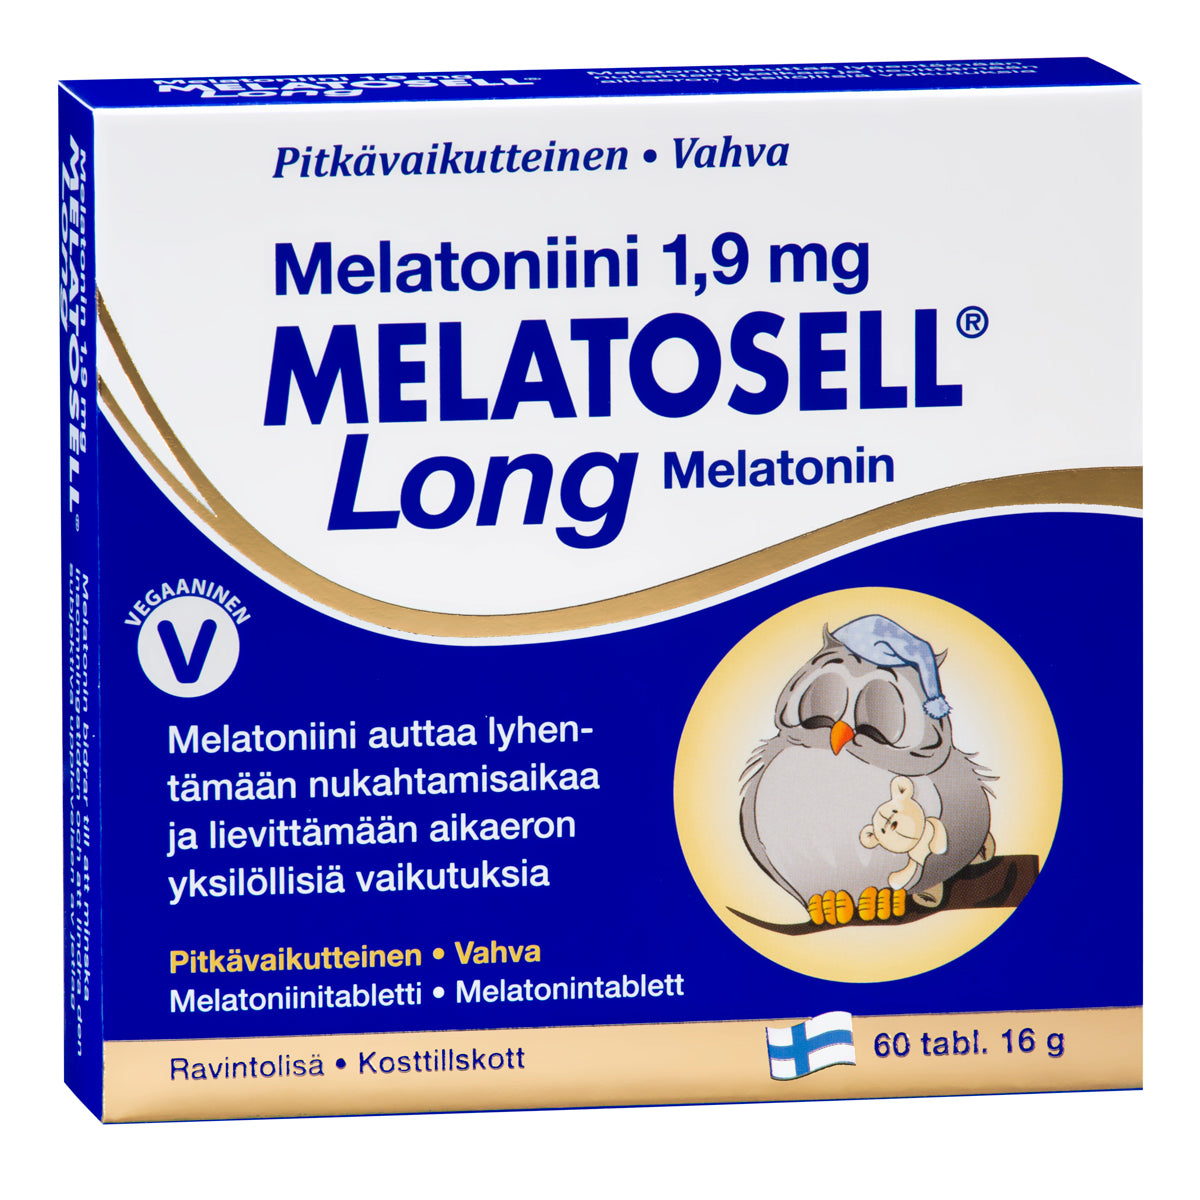 Melatosell Long Melatoniini 1,9 mg-Hankintatukku-Hyvinvoinnin Tavaratalo